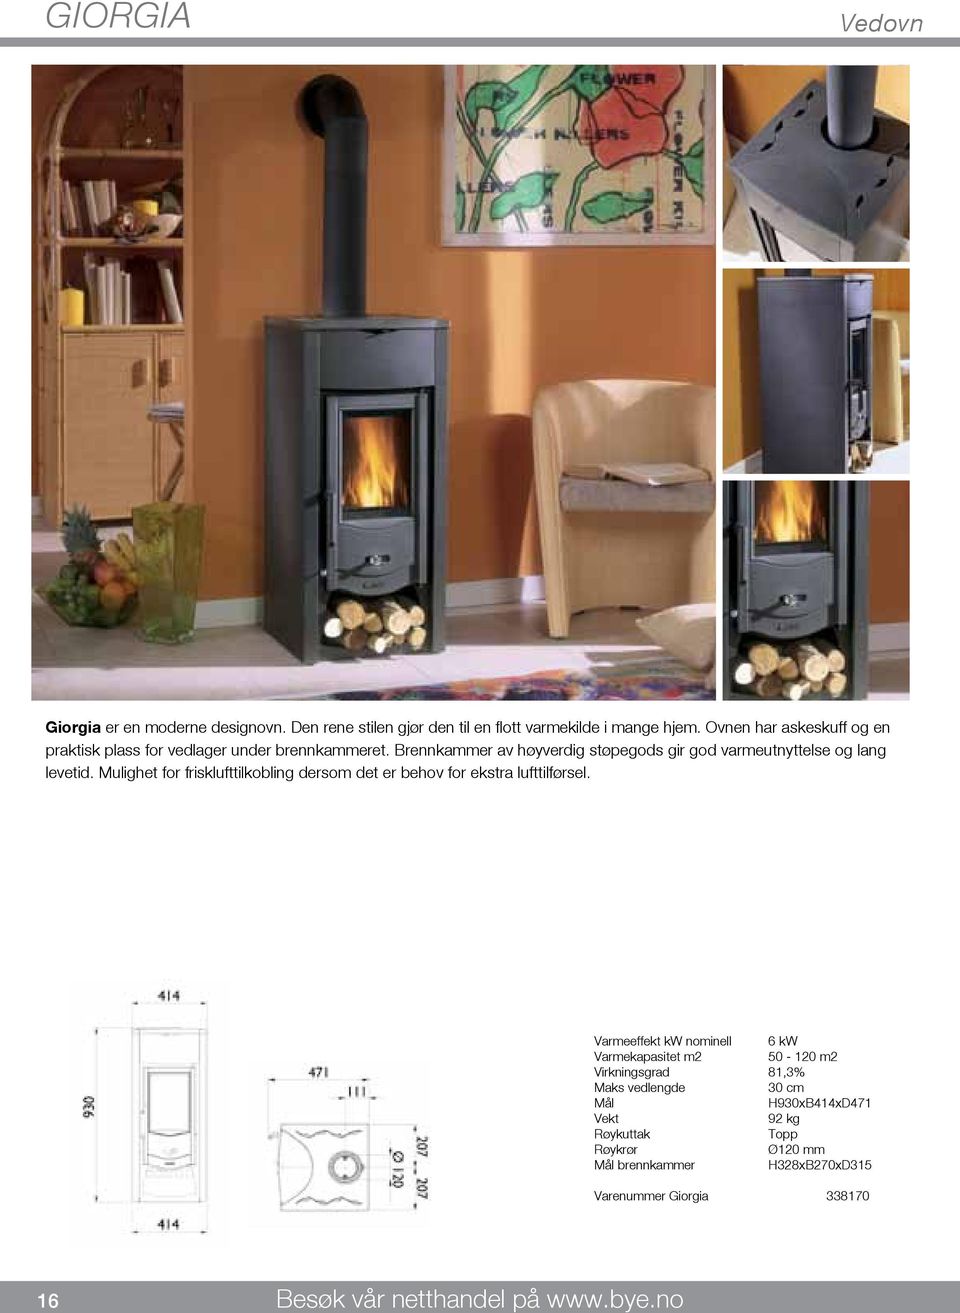 Brennkammer av høyverdig støpegods gir god varmeutnyttelse og lang levetid.